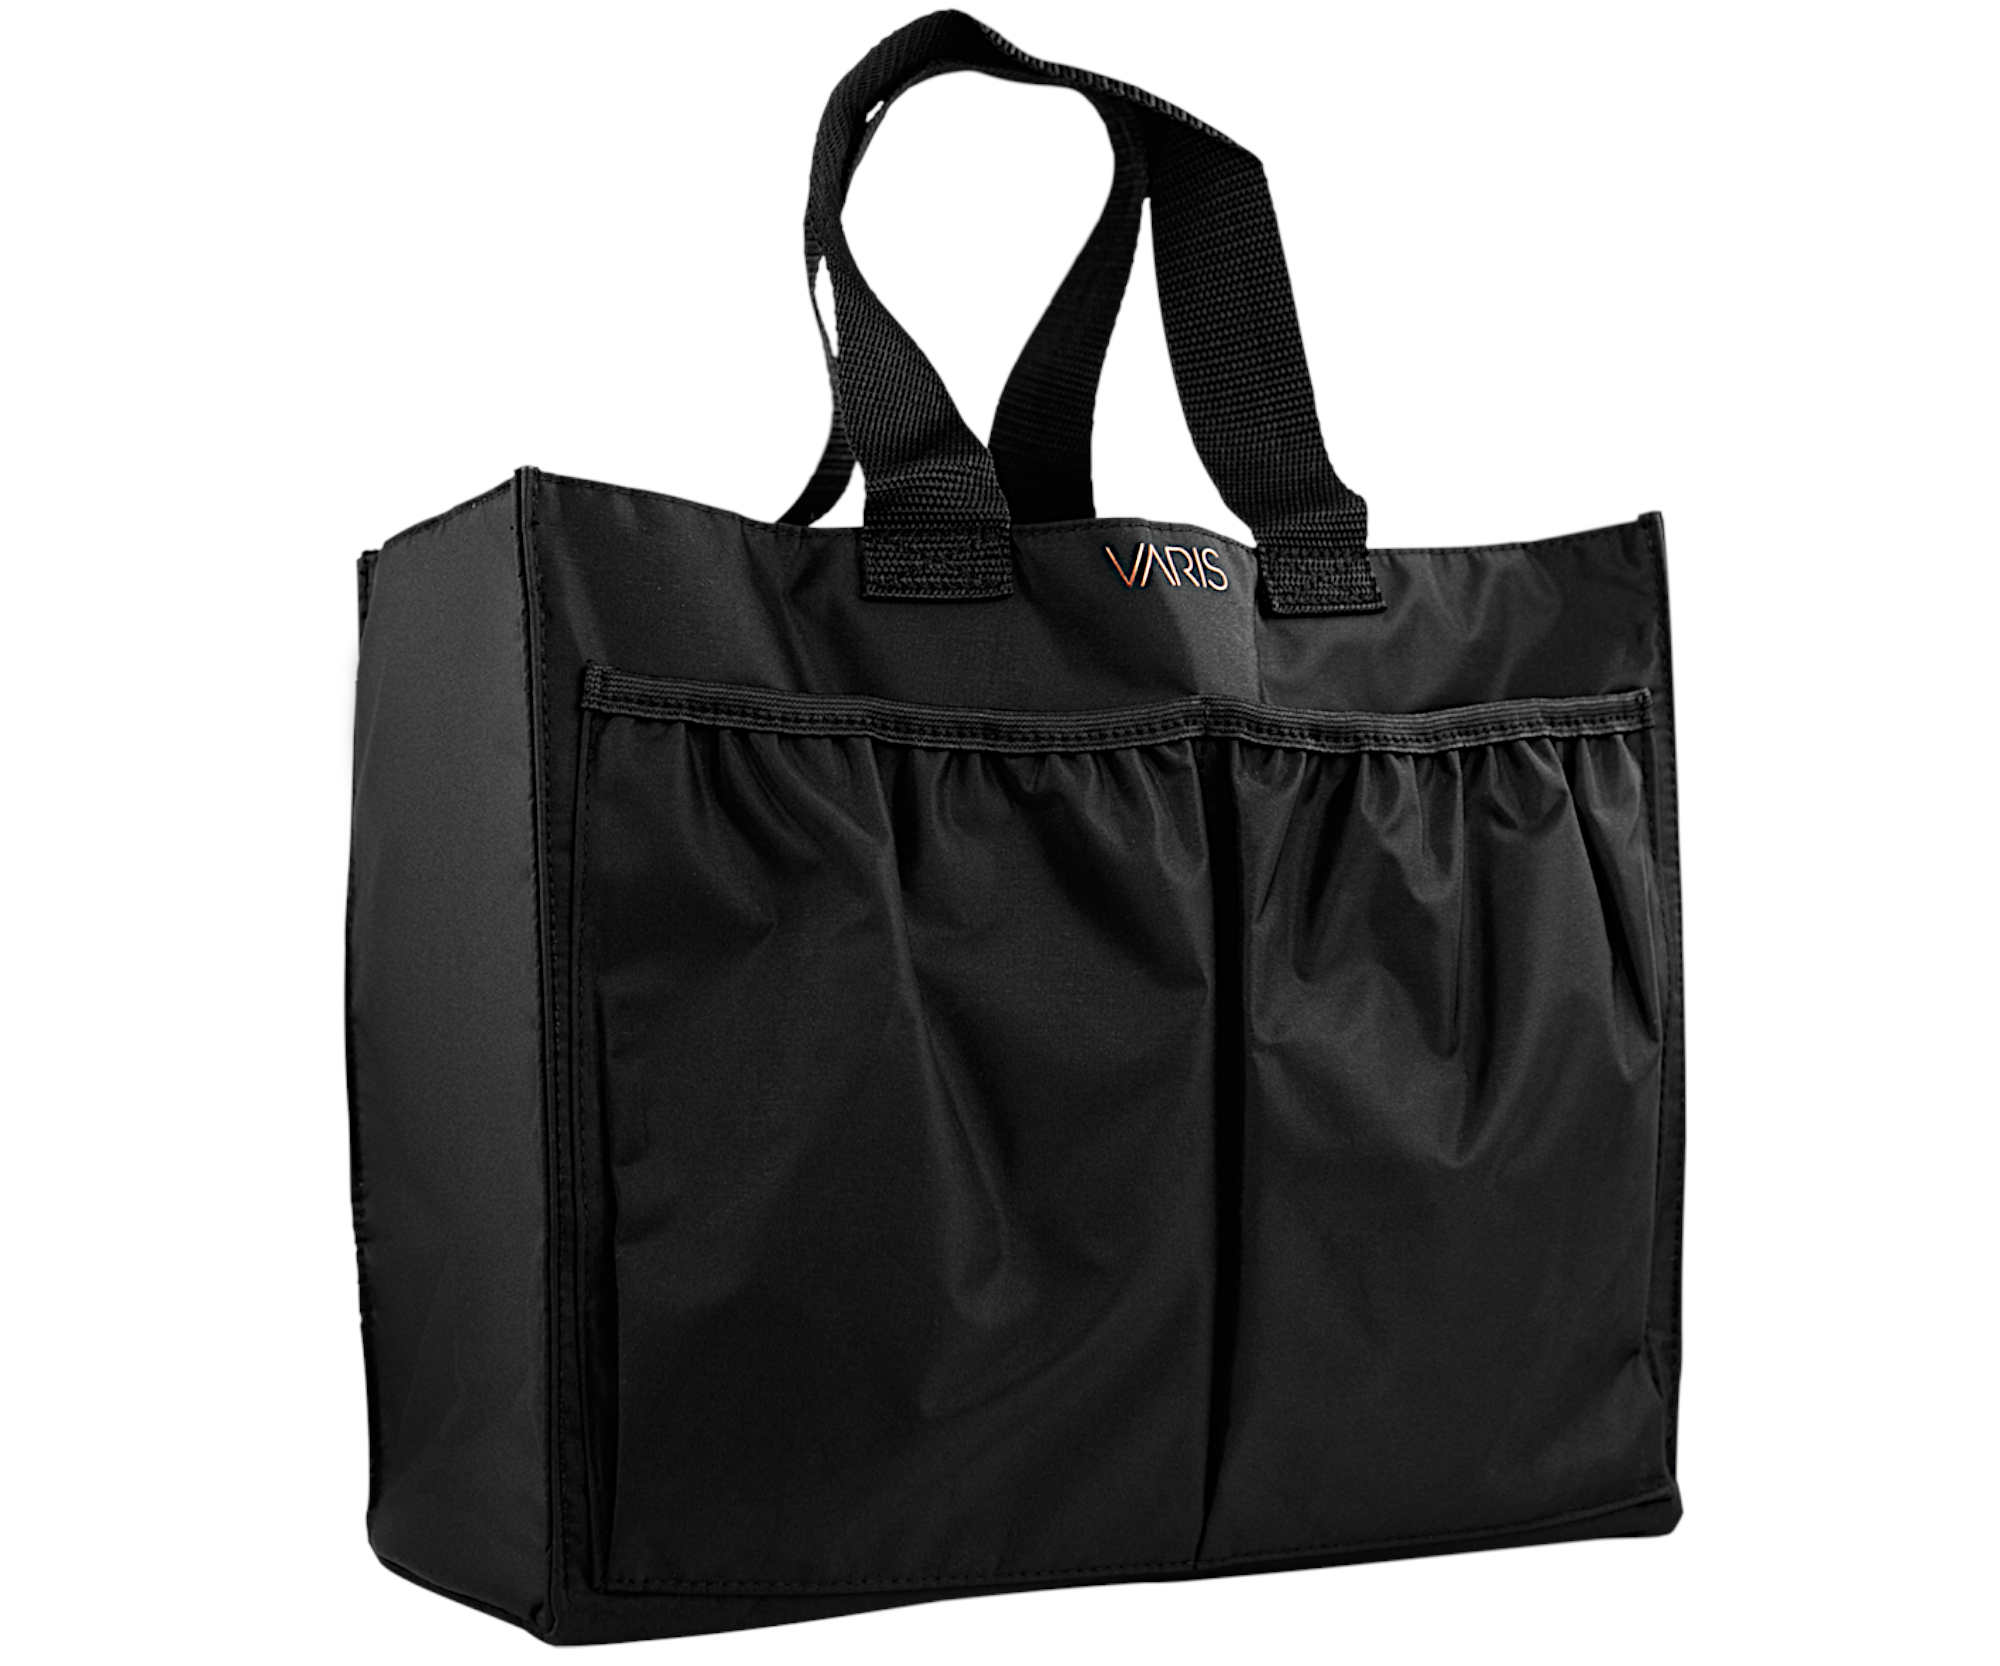 Přenosná taška na kadeřnické nástroje a příslušenství Varis Caddy - černá + dárek zdarma